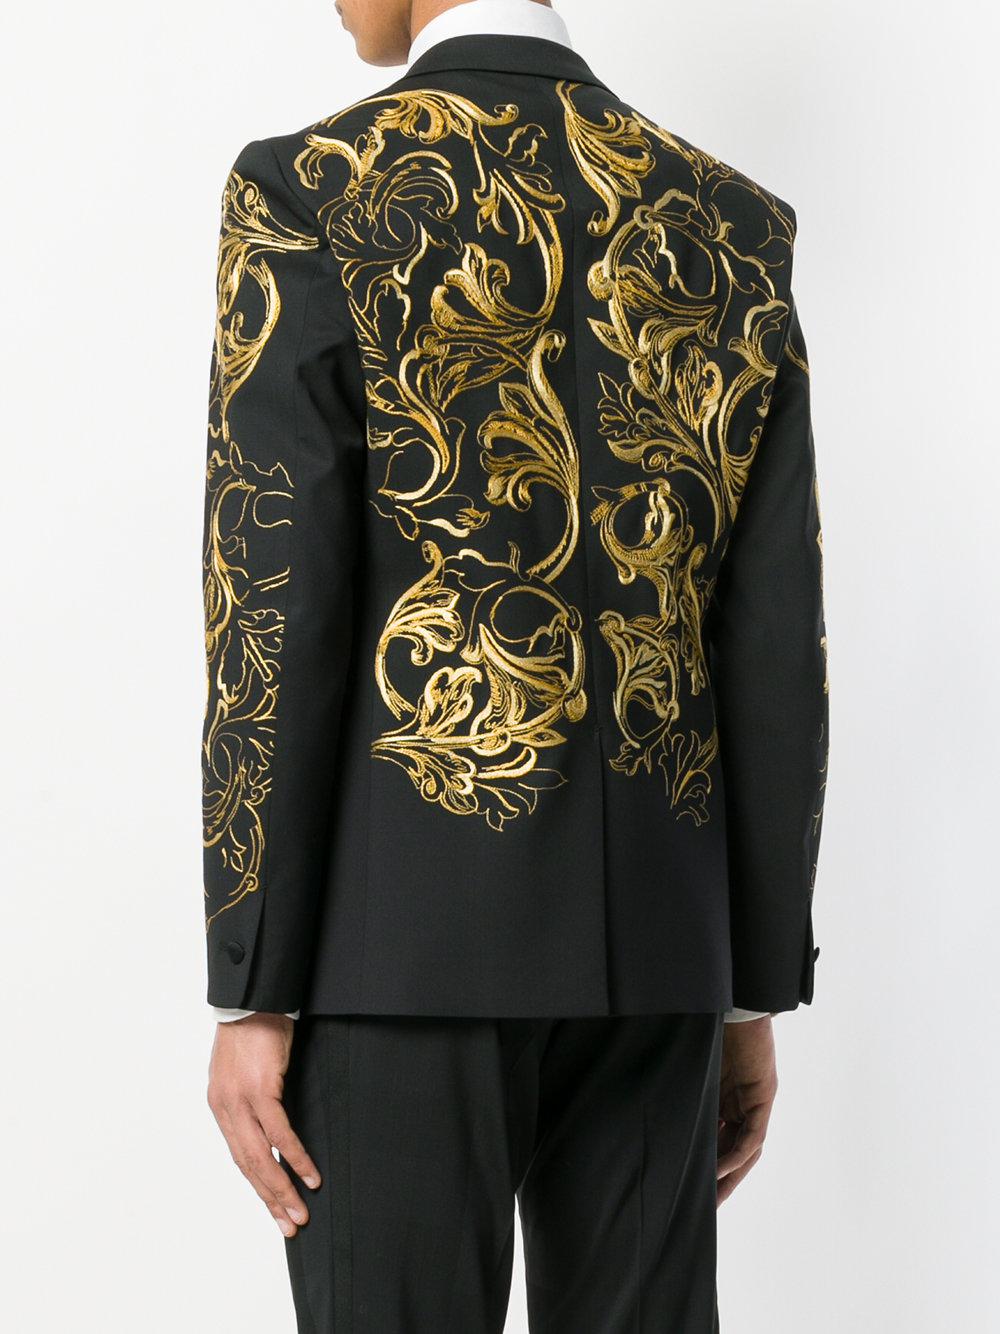 Versace Wool Brocade Tuxedo Blazer in Black for Men - Lyst